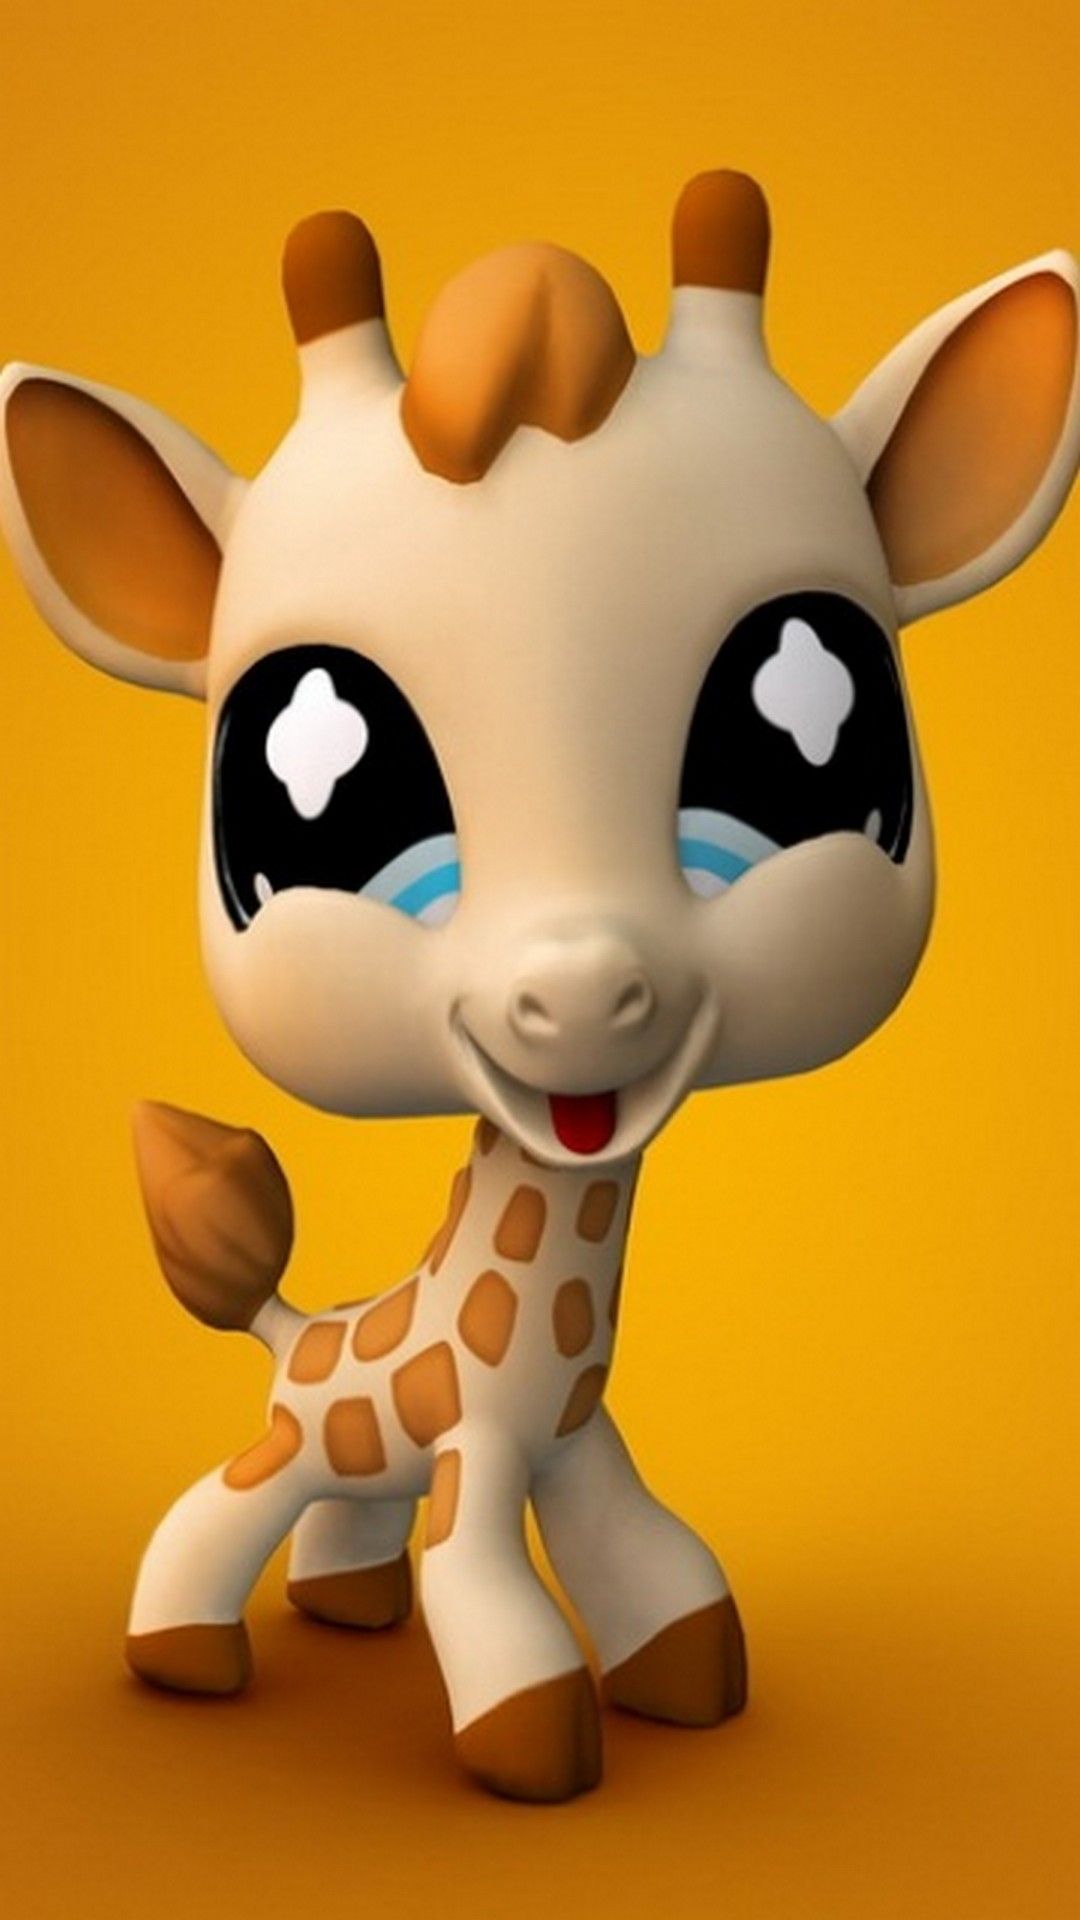 Giraffe Screensaver